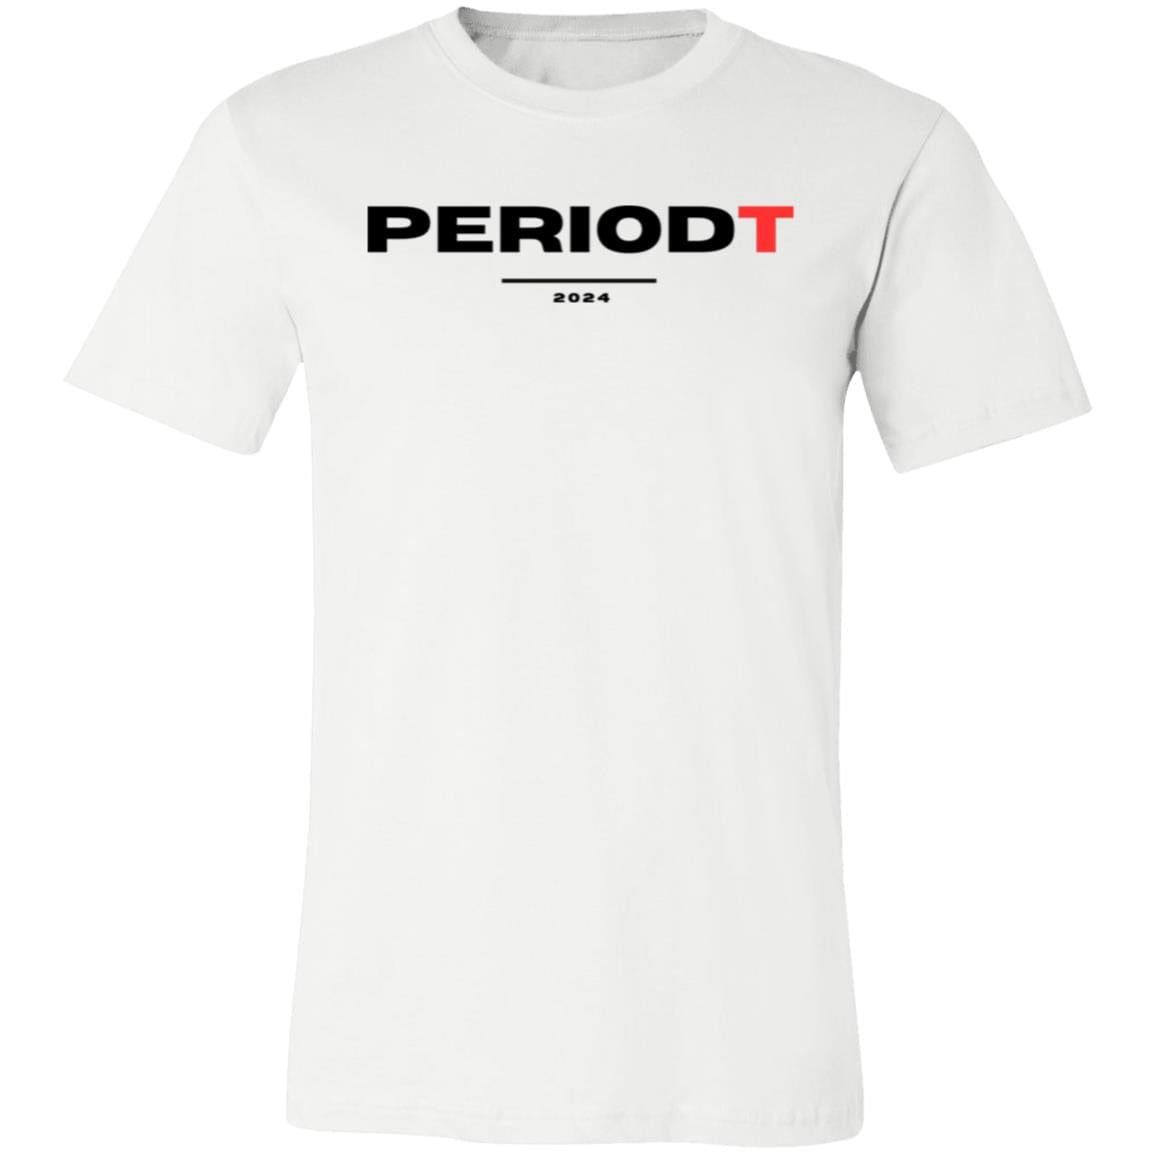 PERIODT Unisex Jersey Short-Sleeve T-Shirt